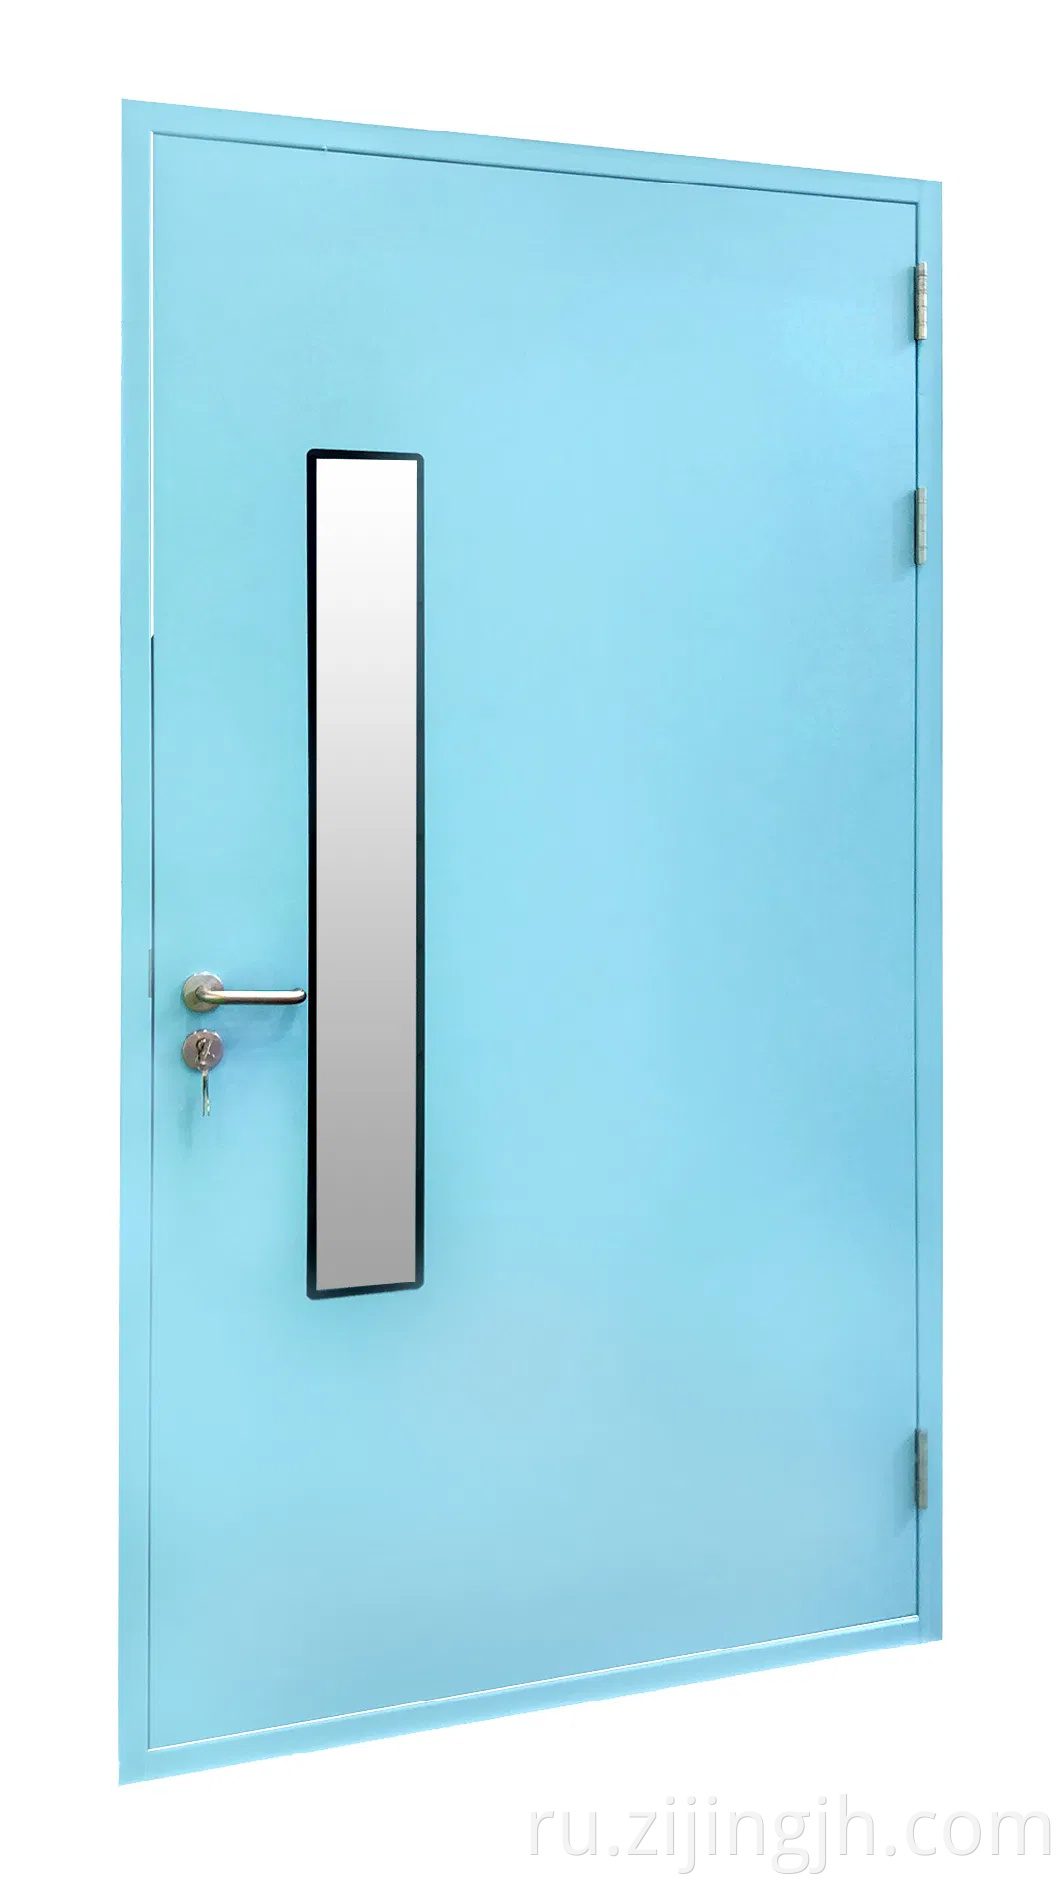 Стальная дверь на индивидуальную бумагу 50 мм для фармацевтической чистой комнаты